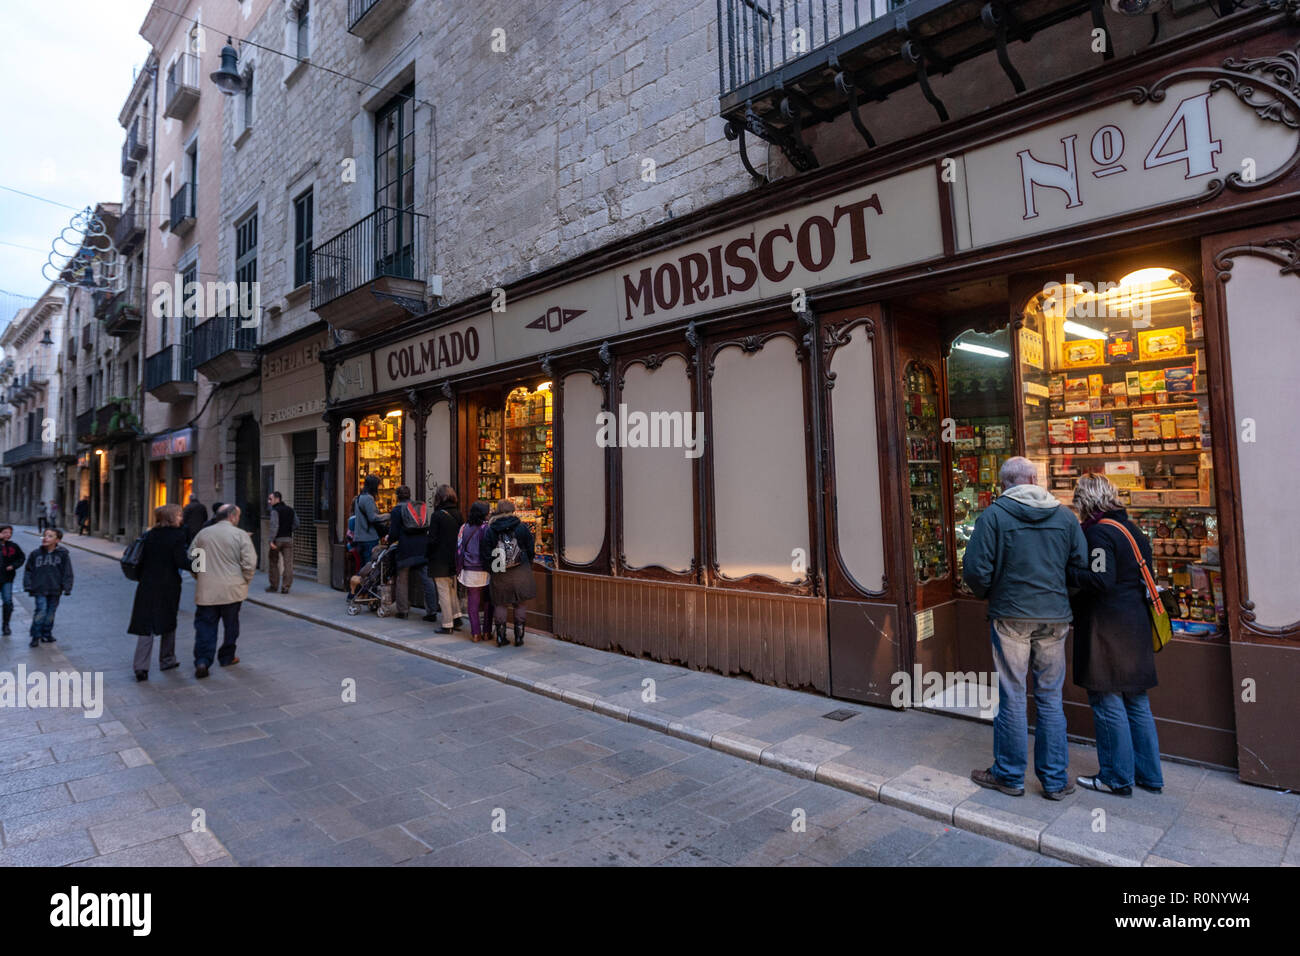 Colmado Moriscot,  Carrer dels Ciutadans, most emblematic shop window in  Girona, Catalonia, Spain Stock Photo